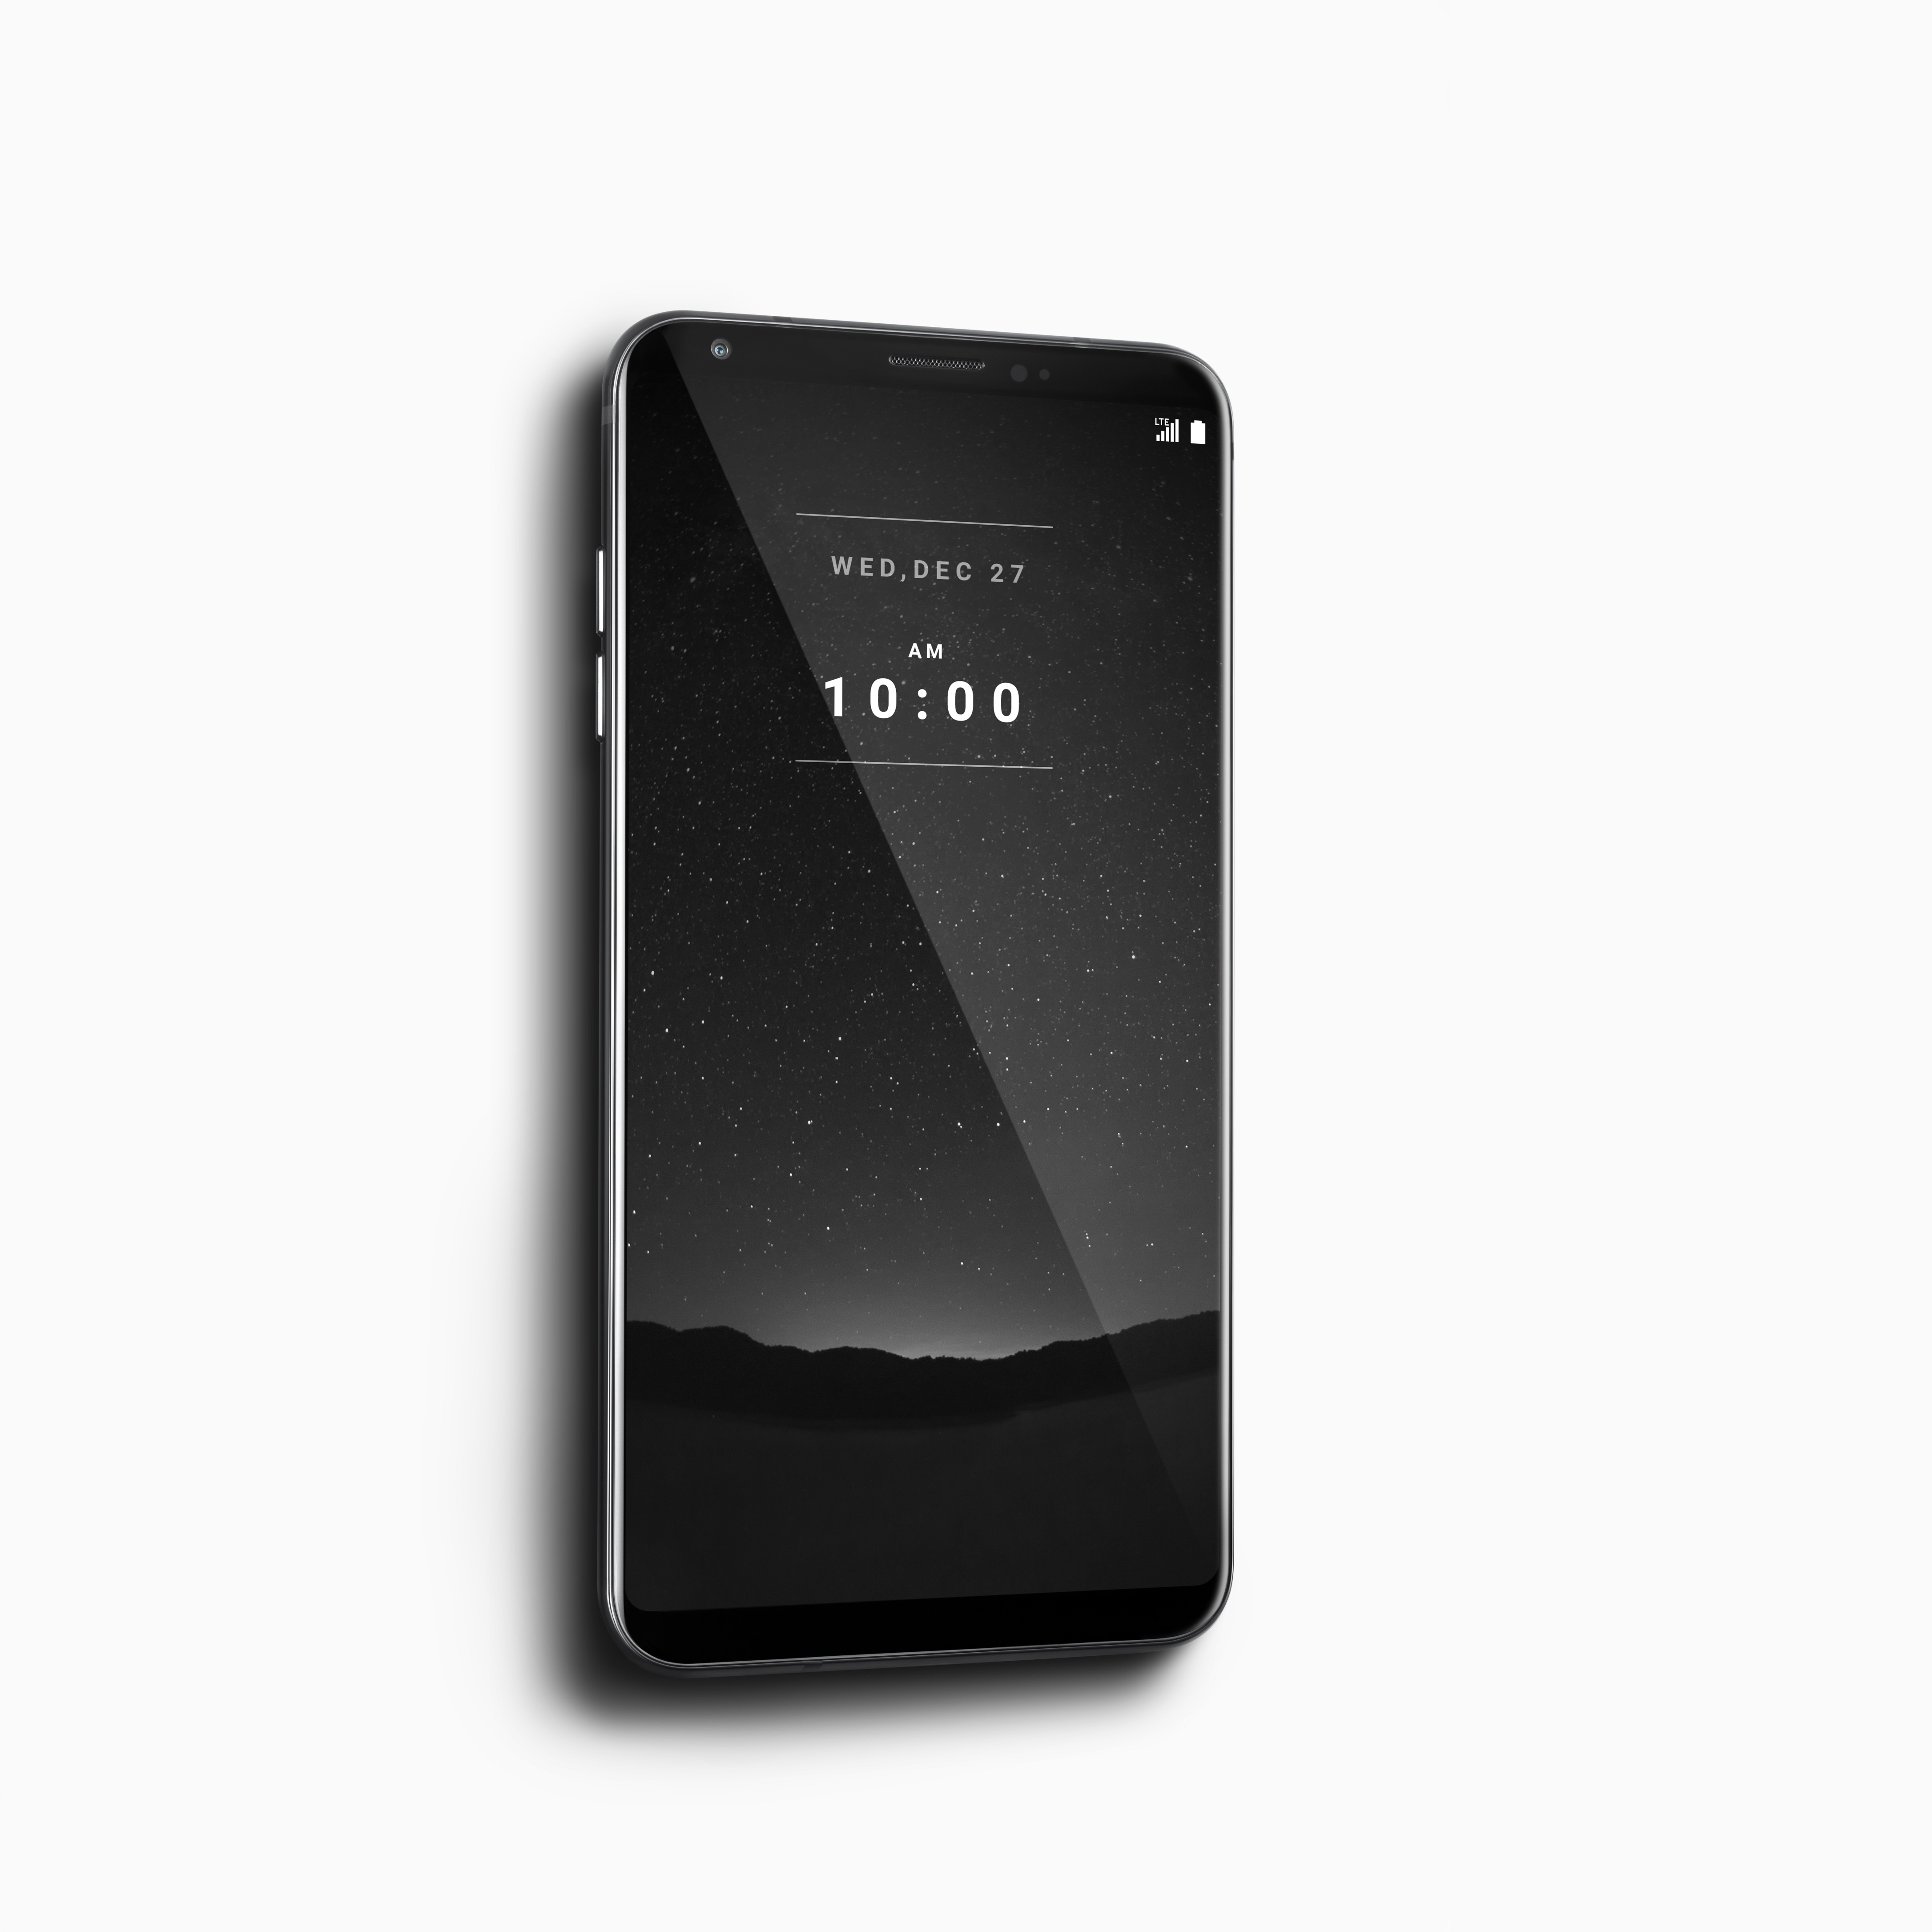 超프리미엄 스마트폰 ‘LG 시그니처 에디션’ 선보인다